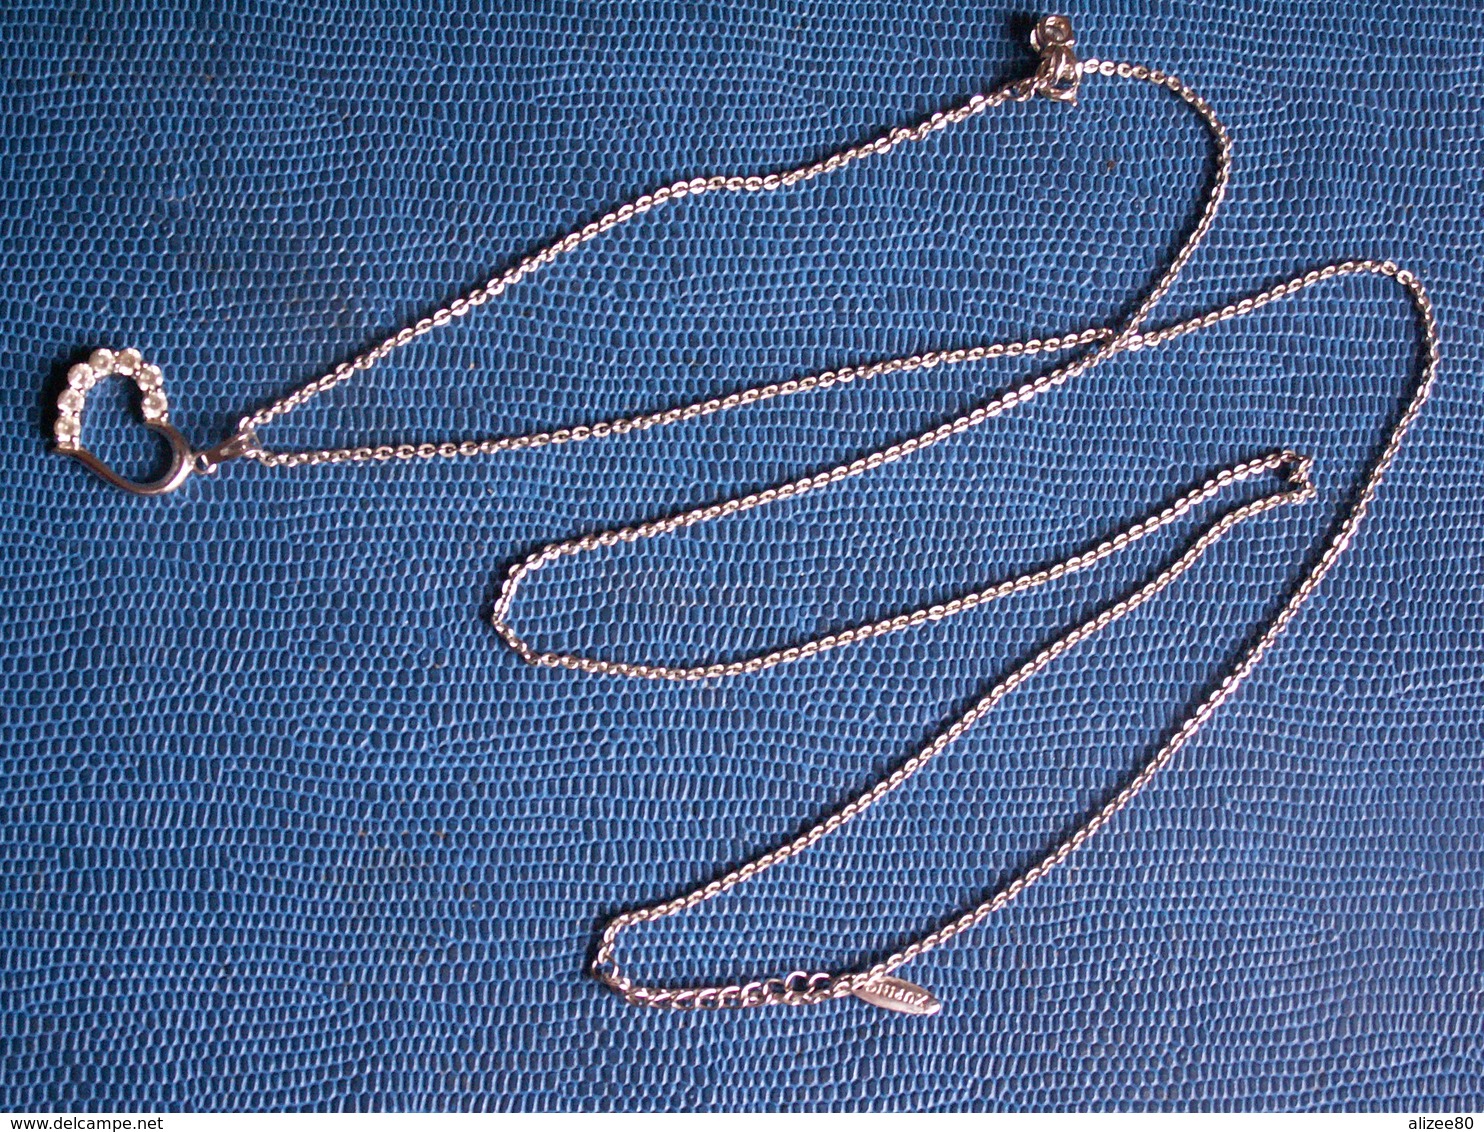 COLLIER Métal Argenté + Coeur Avec 7 Petites Pierres / Longueur 85 Cm - Avec Sa Boîte - Necklaces/Chains